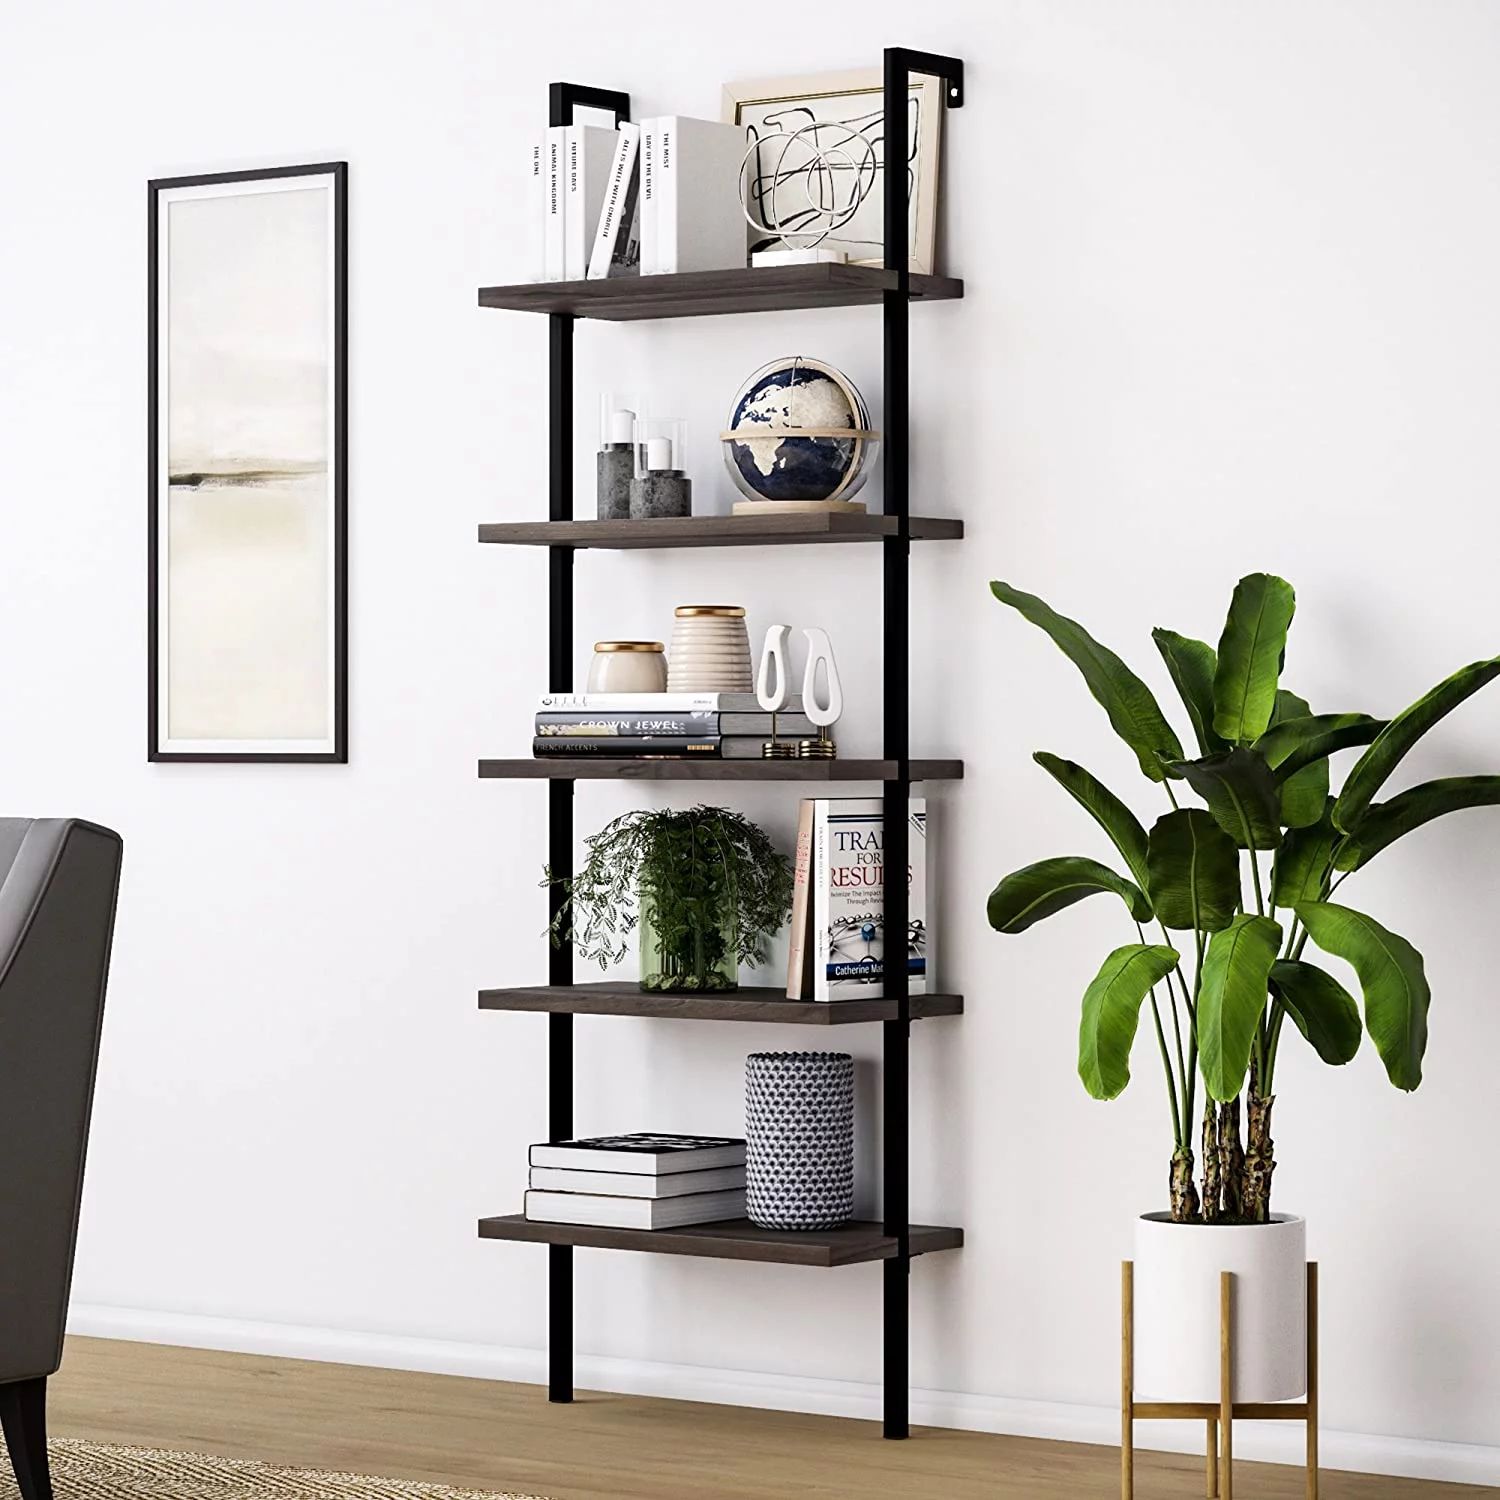 Resenkos Modern 71 Inches 5-Shelf Ladder Bookcase, Industrial Storage Bookshelf with Metal Frame,... | Walmart (US)